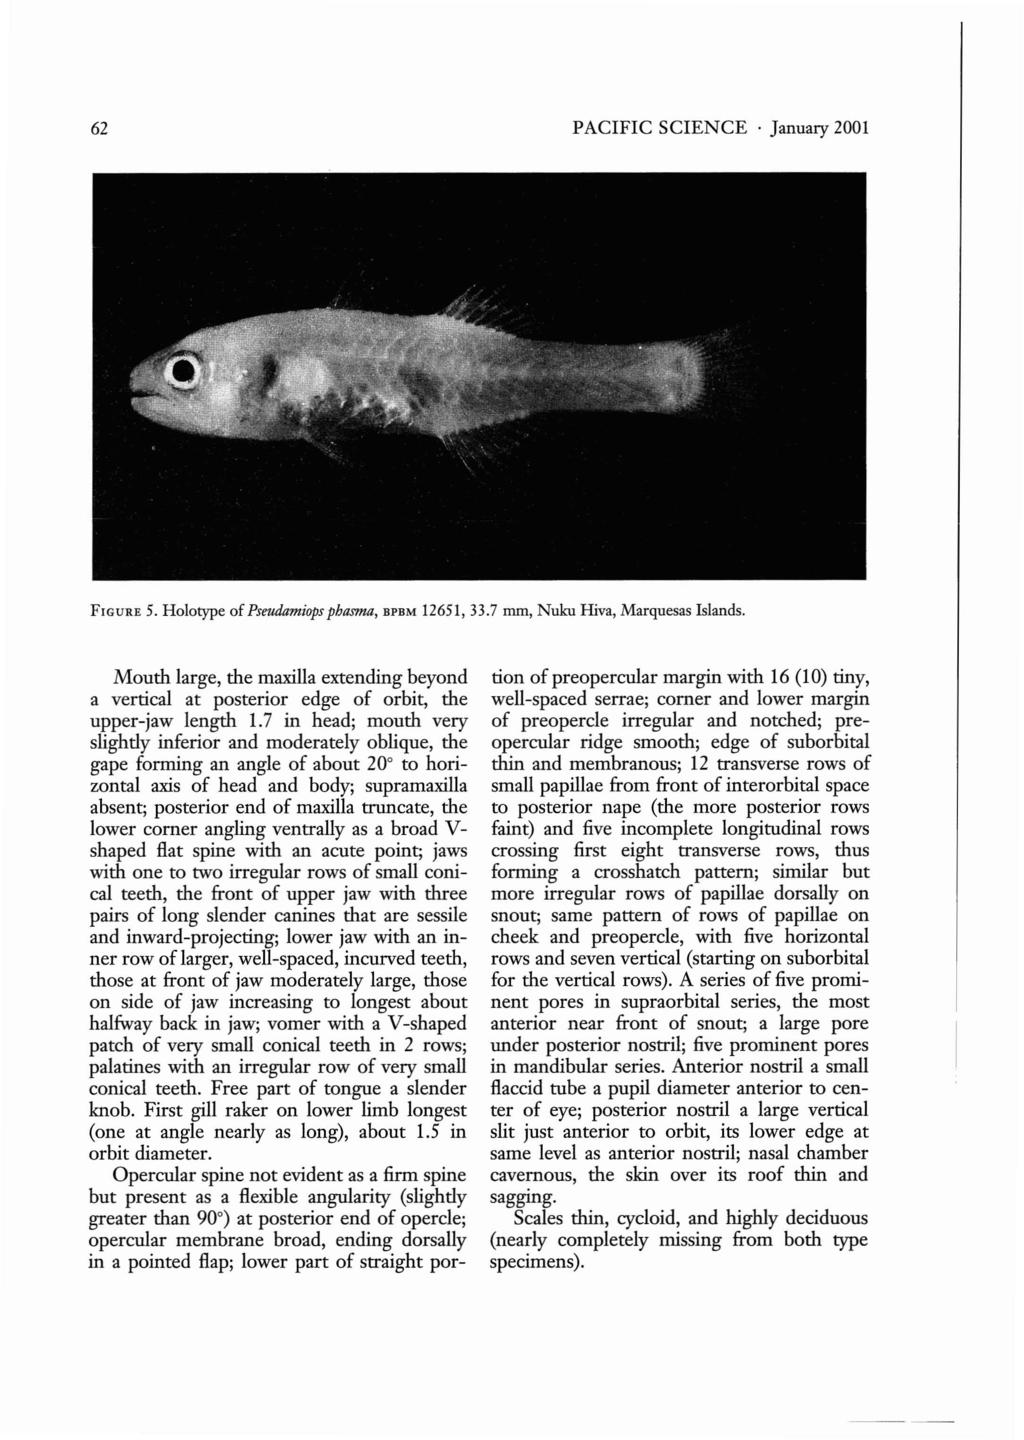 62 PACIFIC SCIENCE January 2001 FIGURE 5. Holotype of Pseudamiops phasma, BPBM 12651, 33.7 mm, Nuku Hiva, Marquesas Islands.